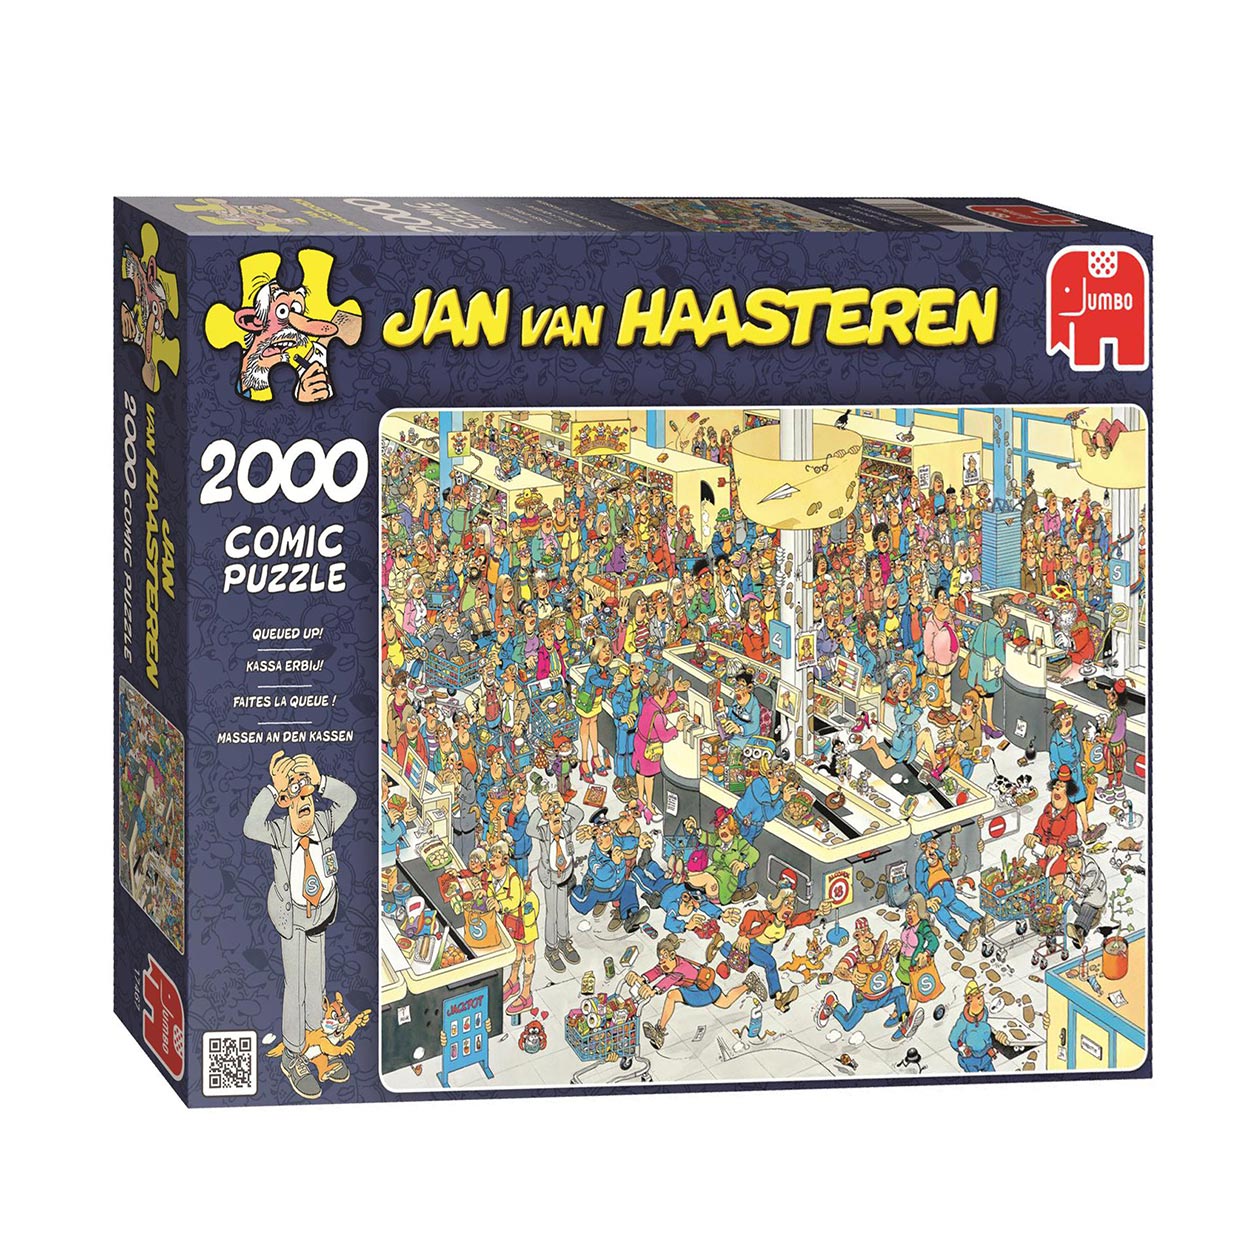 Jan van Haasteren - Kassa erbij!, 2000st.